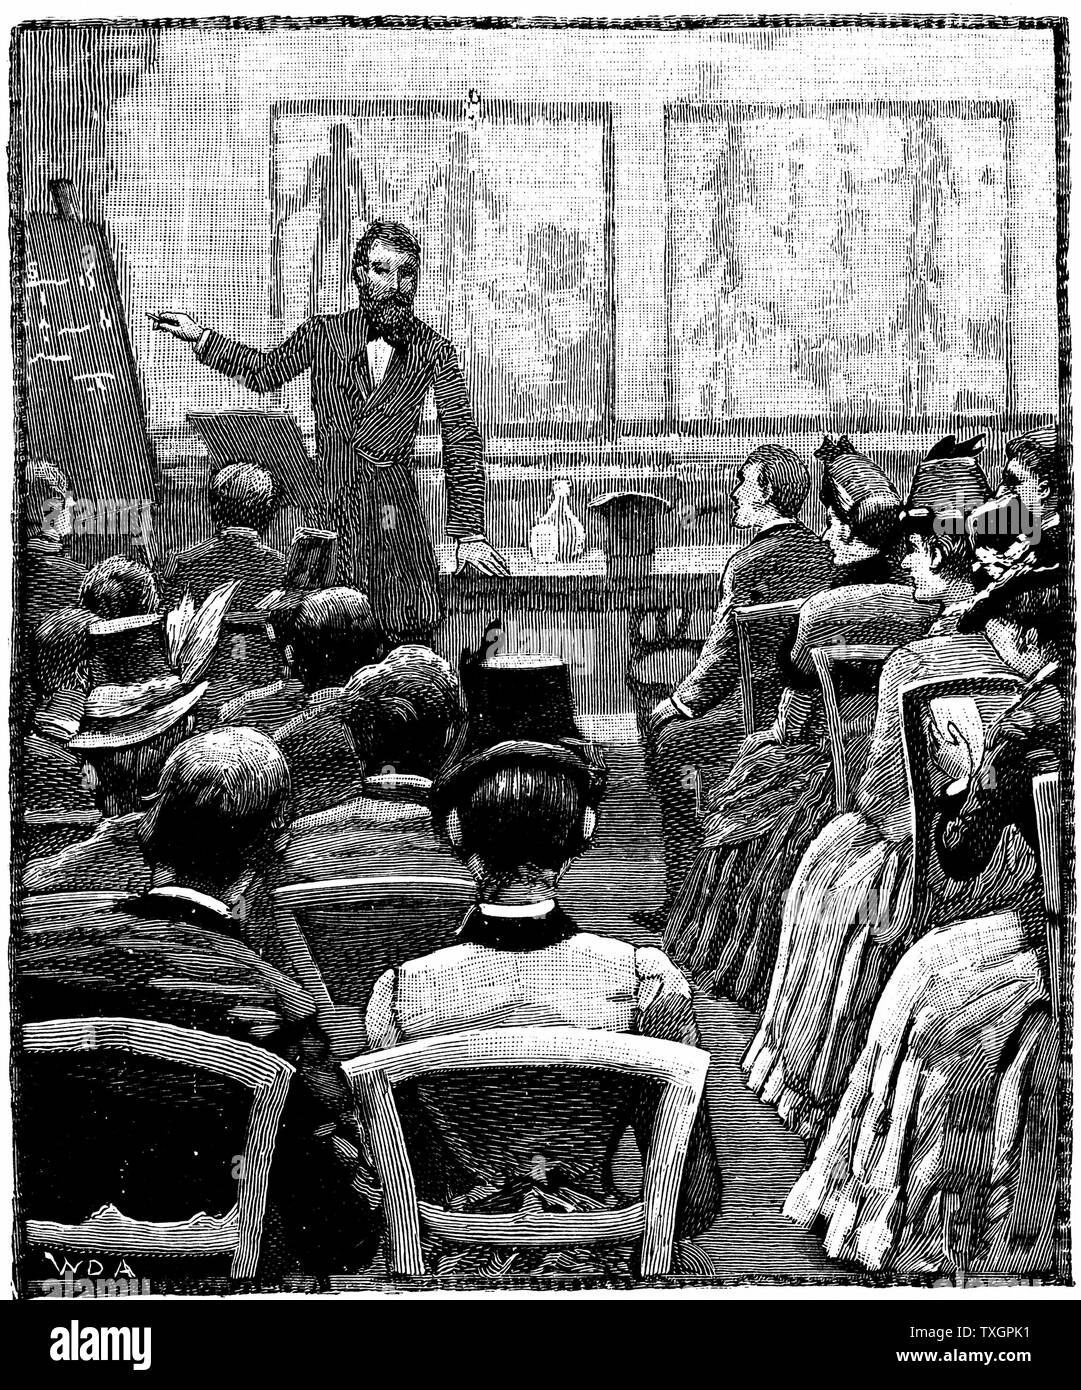 Vortrag über Physiologie und Hygiene in Fortschritte beim Christlichen Verein junger Menschen (CVJM) Exeter Hall, London. 1887 Holzstich Stockfoto